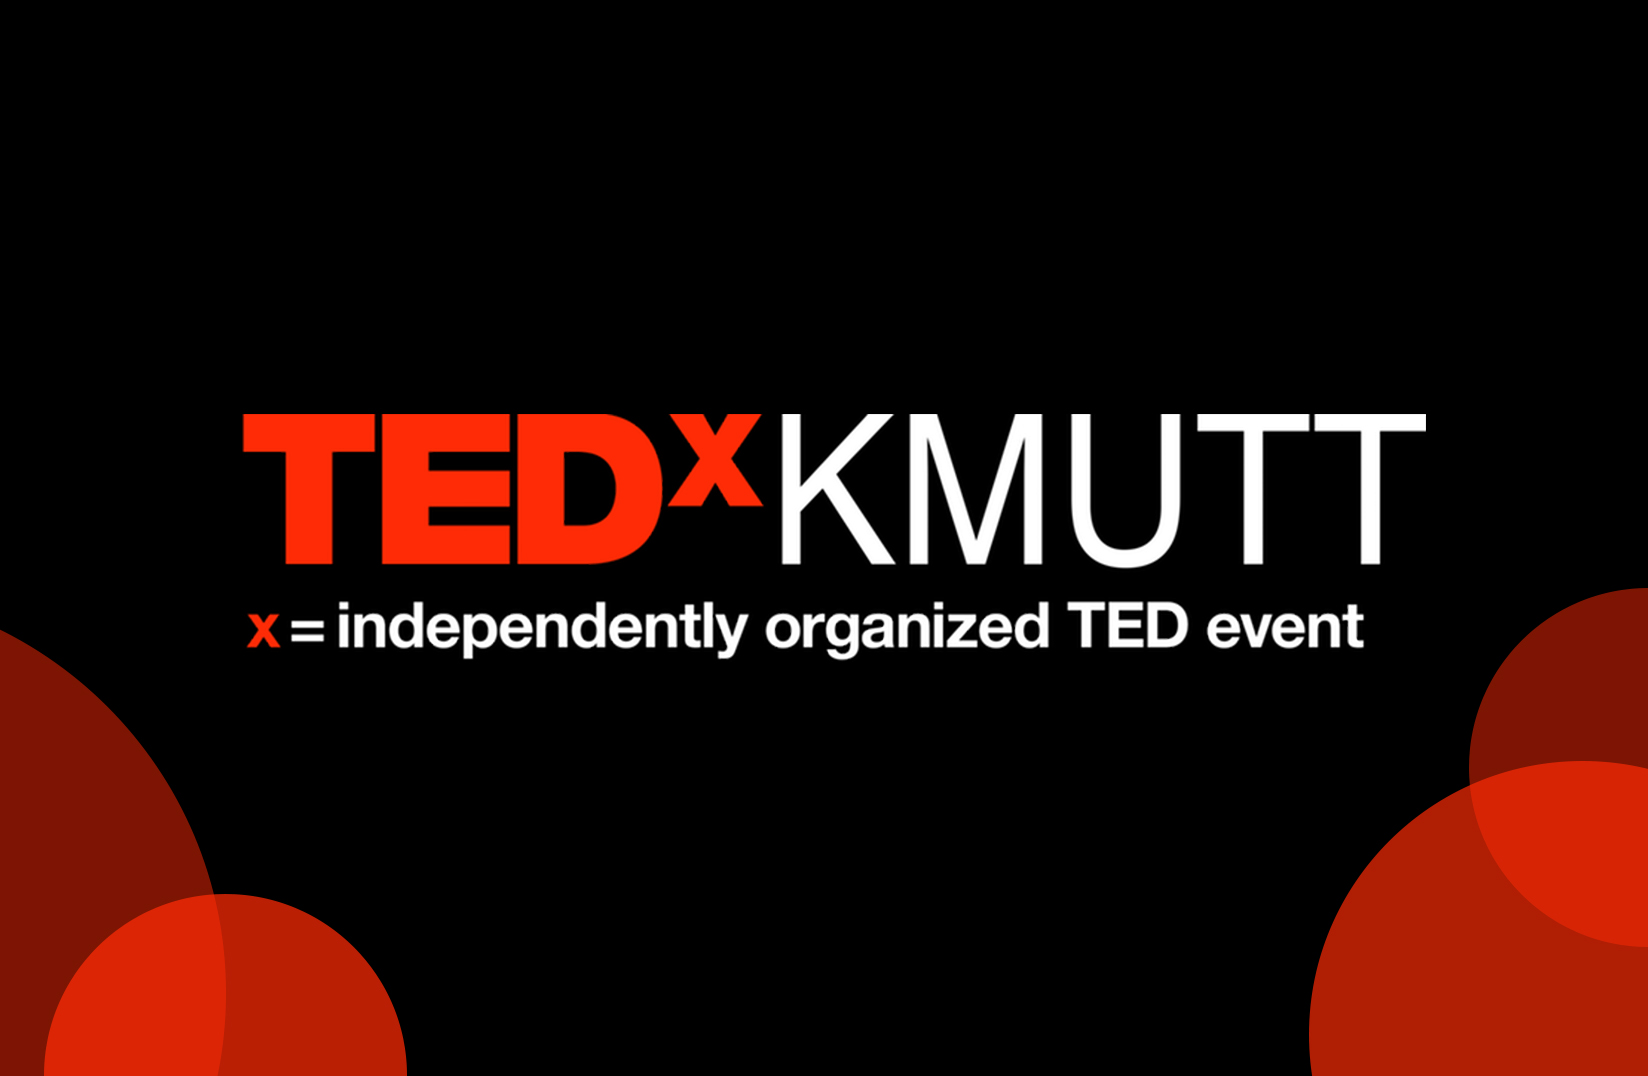 TEDxKMUTT